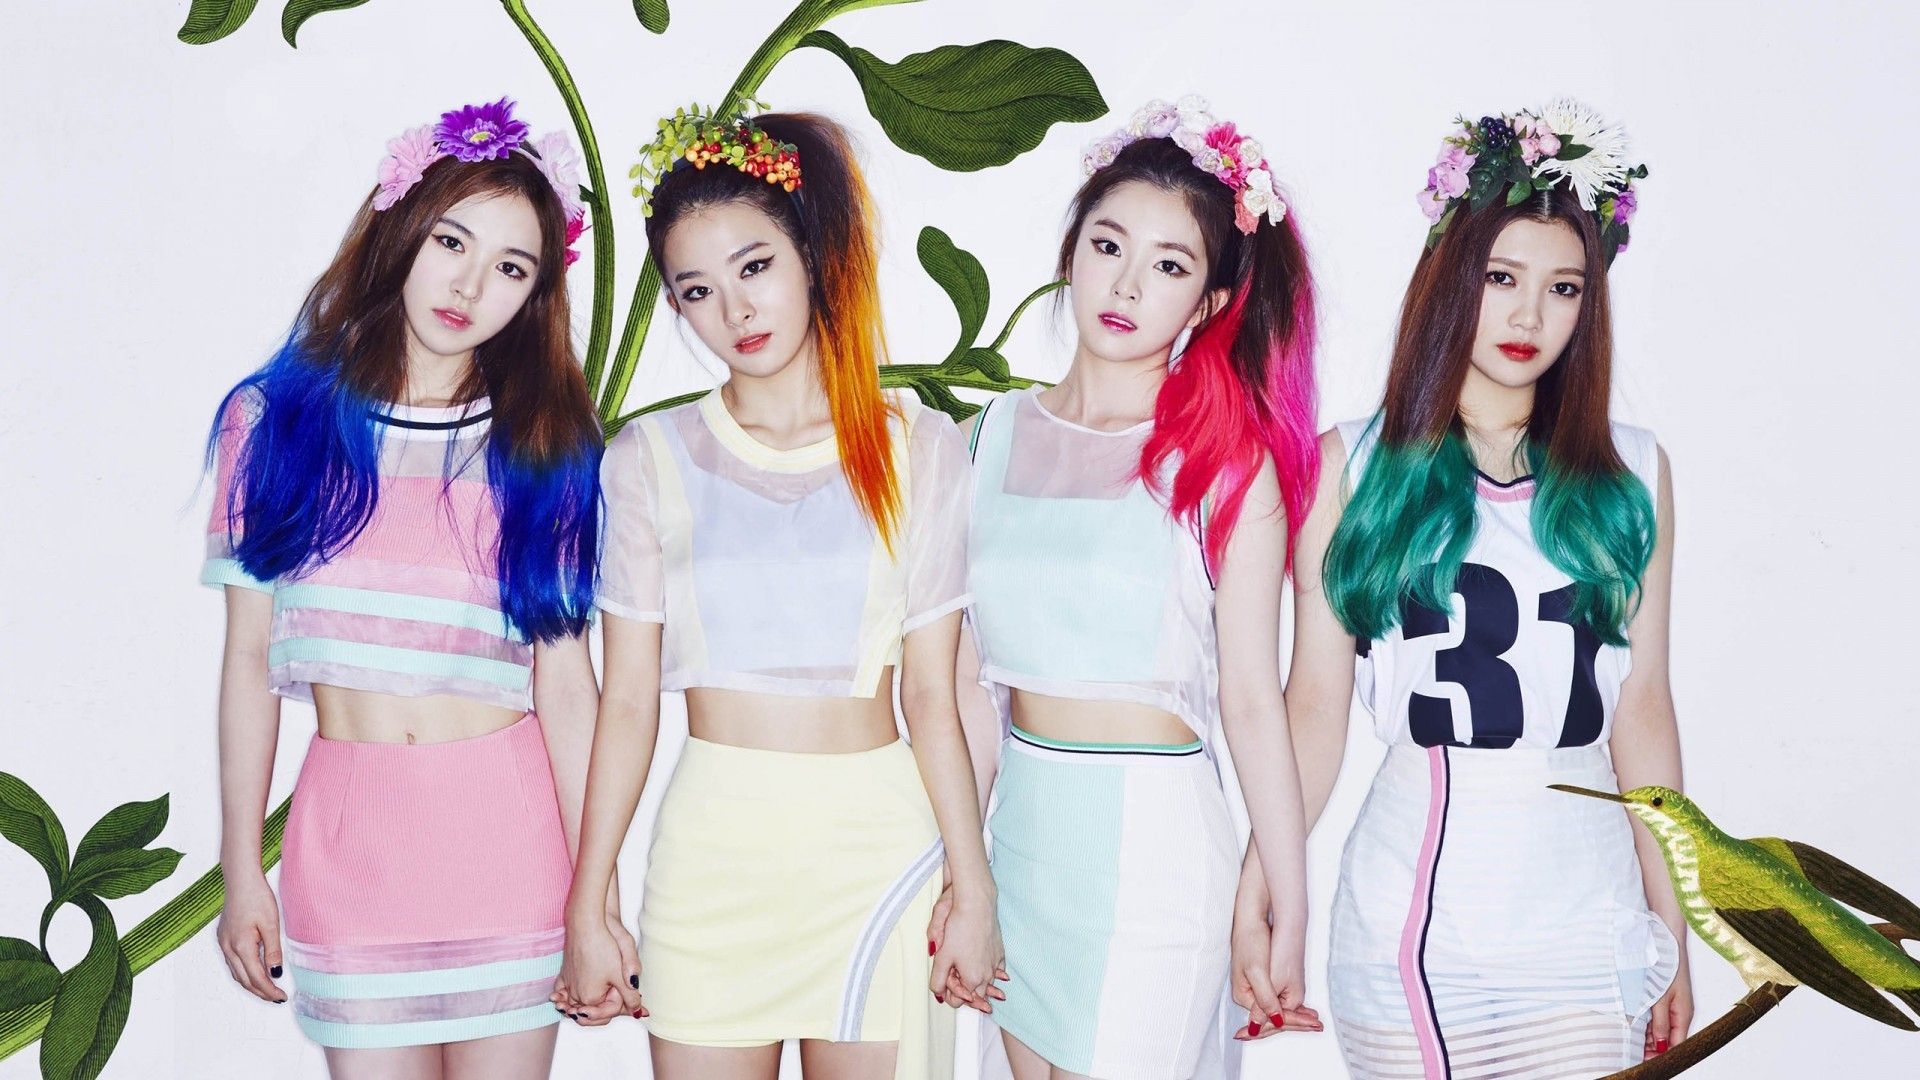 Download 1920x1080 Red Velvet, Irene, Seulgi, Joy, Wendy, South